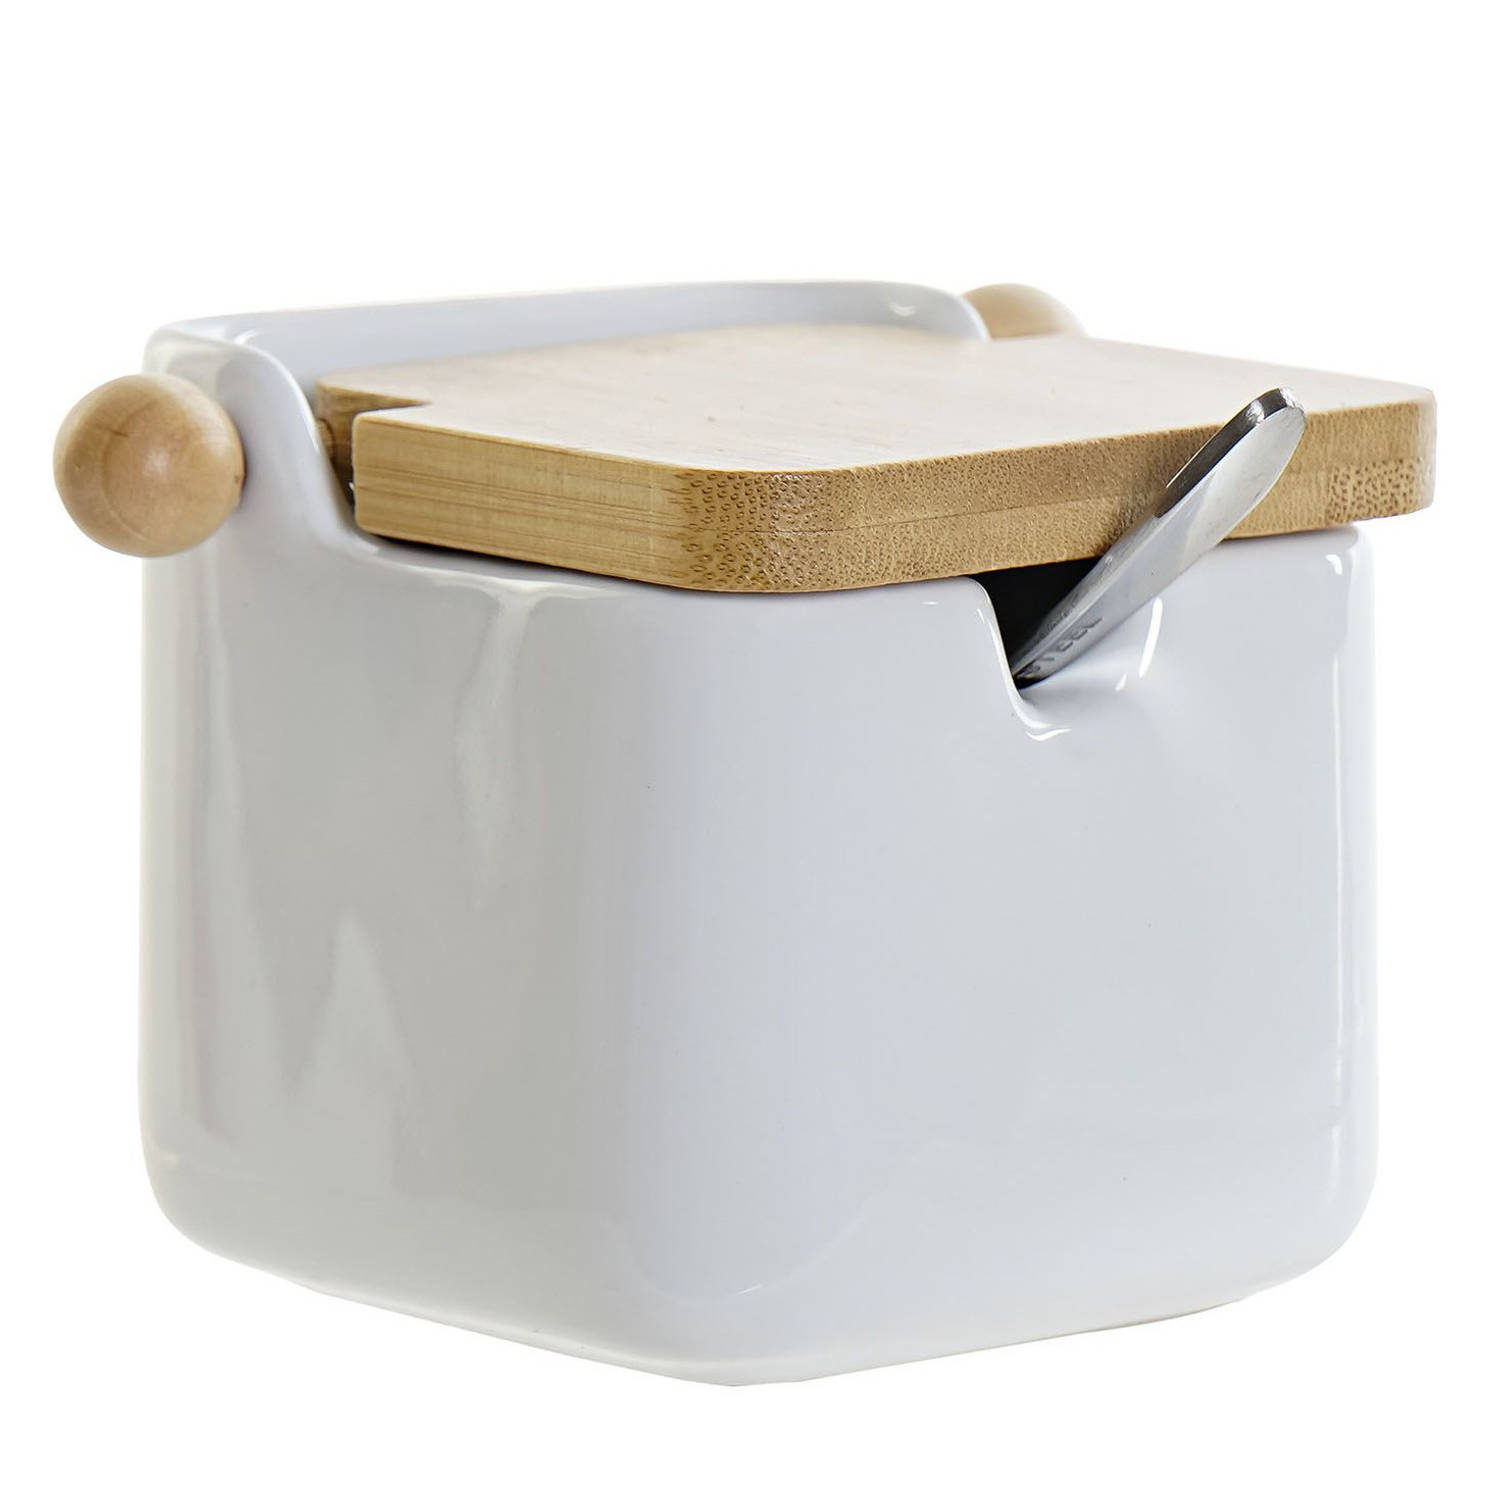 Suikerkom / suikerpotje wit keramiek met lepel en bamboe houten deksel 8 x 10,5 cm - Suikerstrooiers